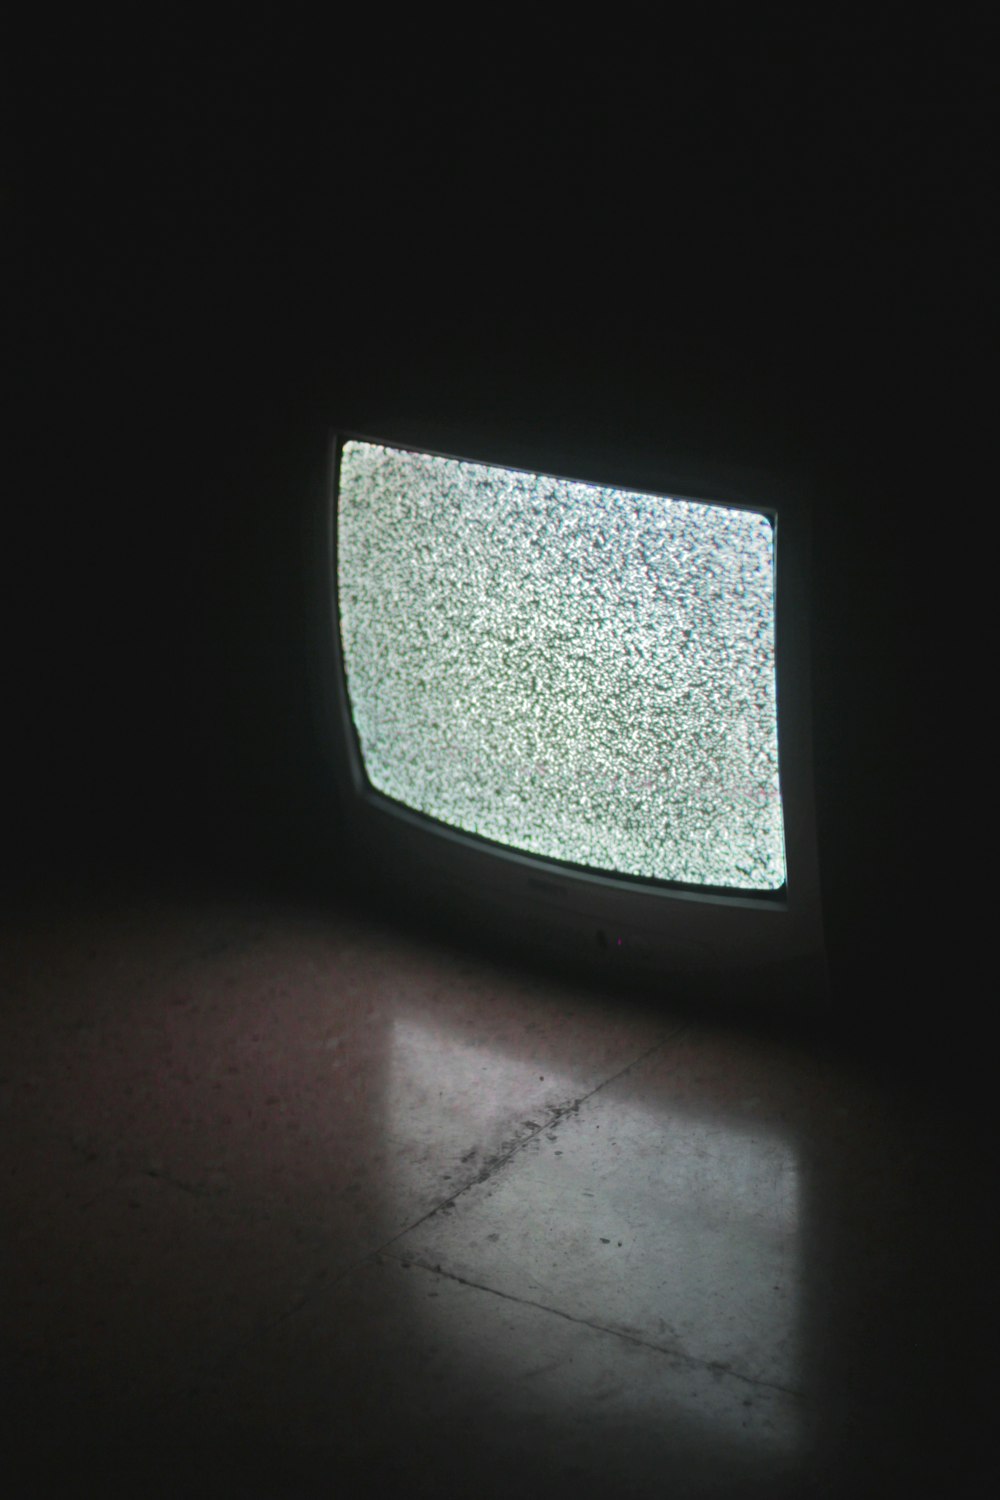 Televisor CRT gris encendido en una habitación oscura